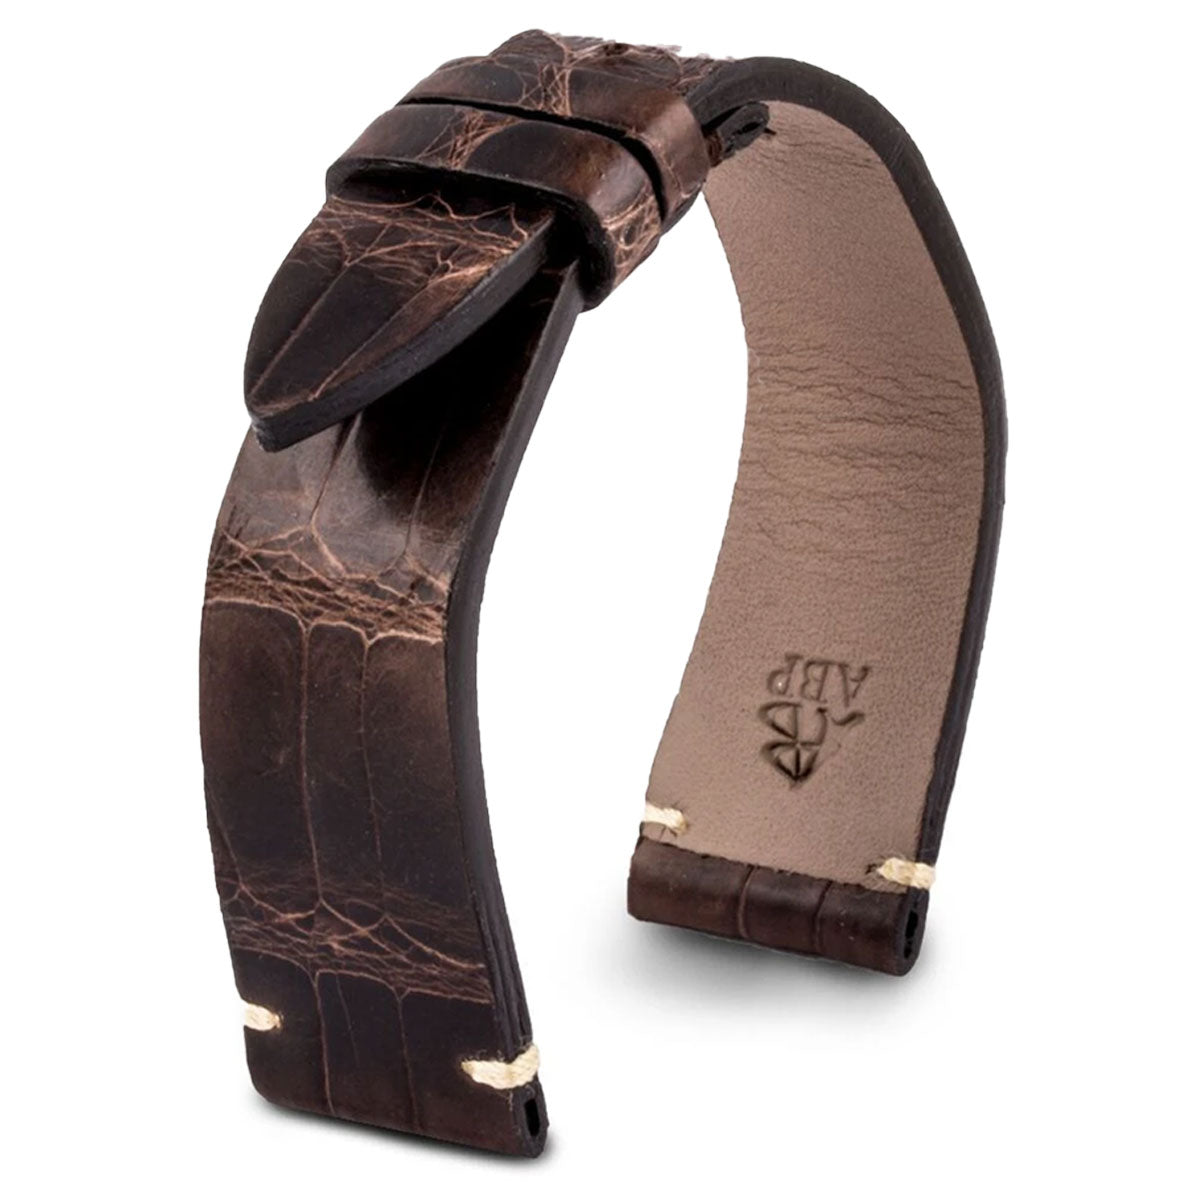 Zenith El Primero - Bracelet-montre cuir - Alligator tannage waxé / mat (noir mat / gris / marron) - watch band leather strap - ABP Concept -